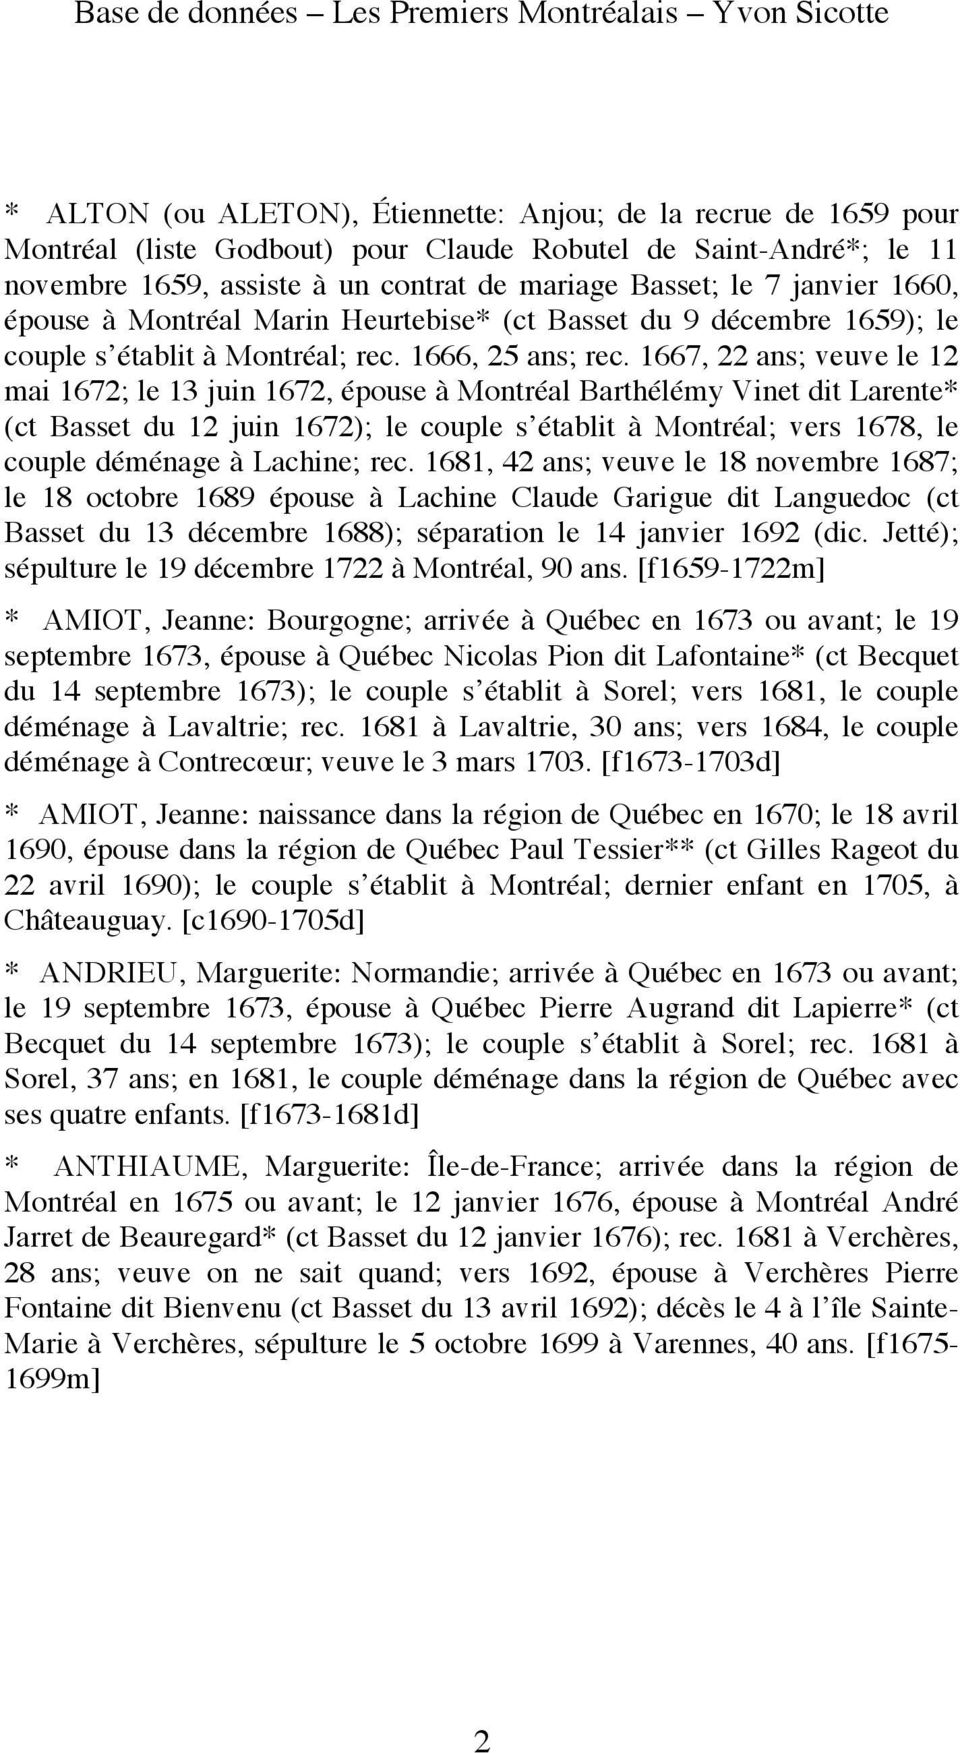 1667, 22 ans; veuve le 12 mai 1672; le 13 juin 1672, épouse à Montréal Barthélémy Vinet dit Larente* (ct Basset du 12 juin 1672); le couple s établit à Montréal; vers 1678, le couple déménage à